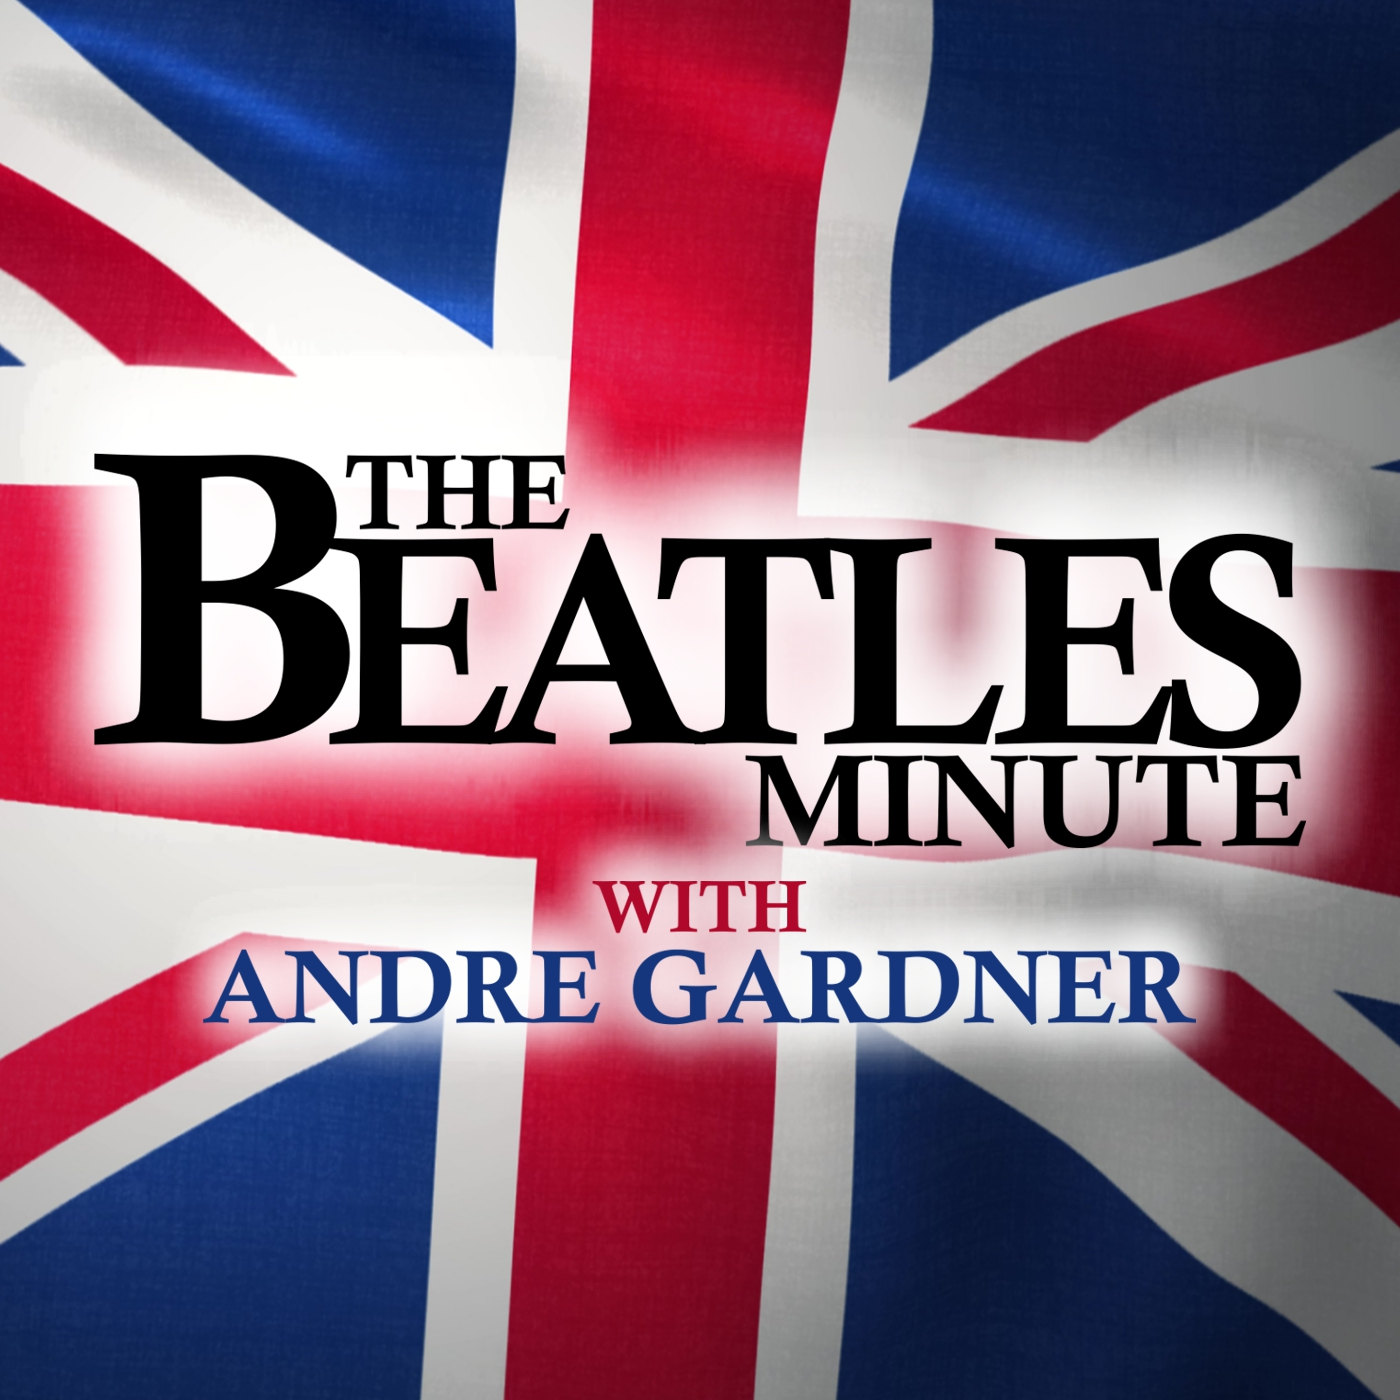 Beatles Minute - week of September 30, 2019